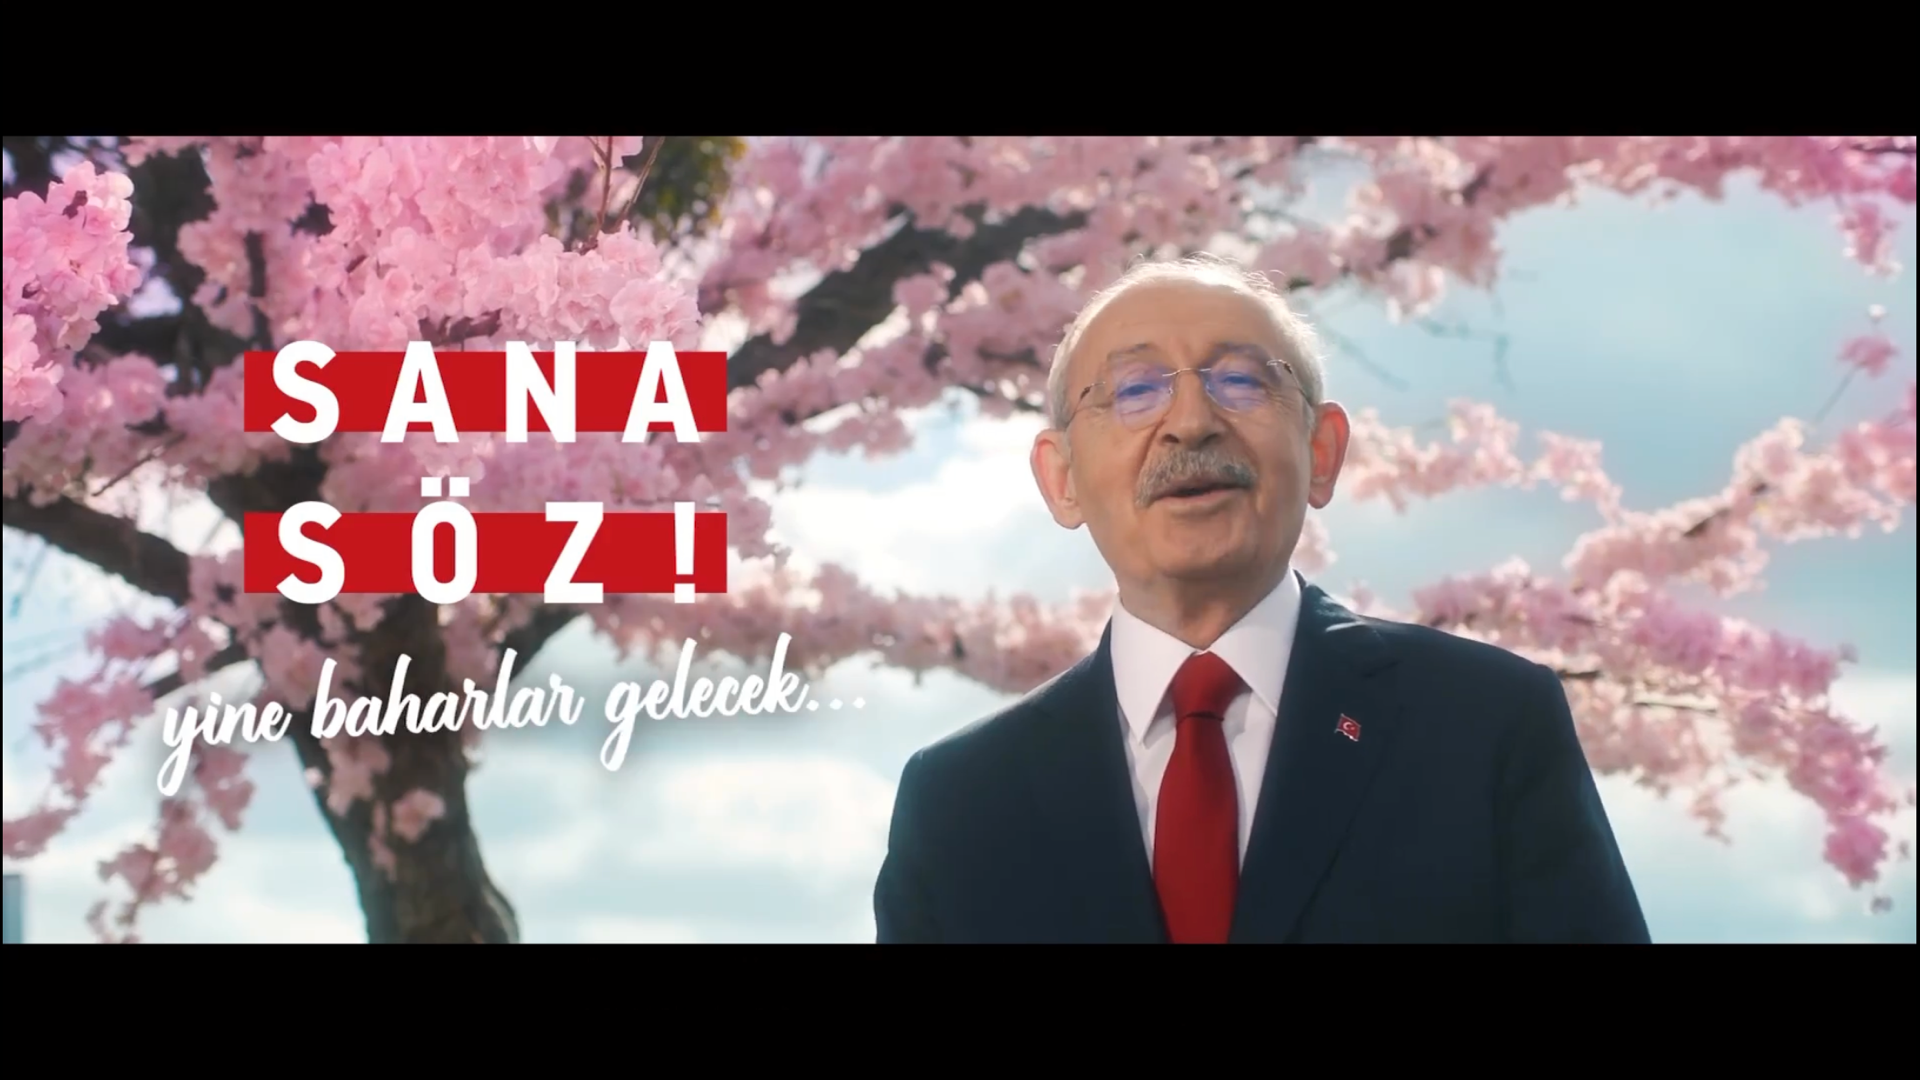 ‘Sana söz, yine baharlar gelecek’ Kılıçdaroğlu’nun seçim videosu ilgi gördü